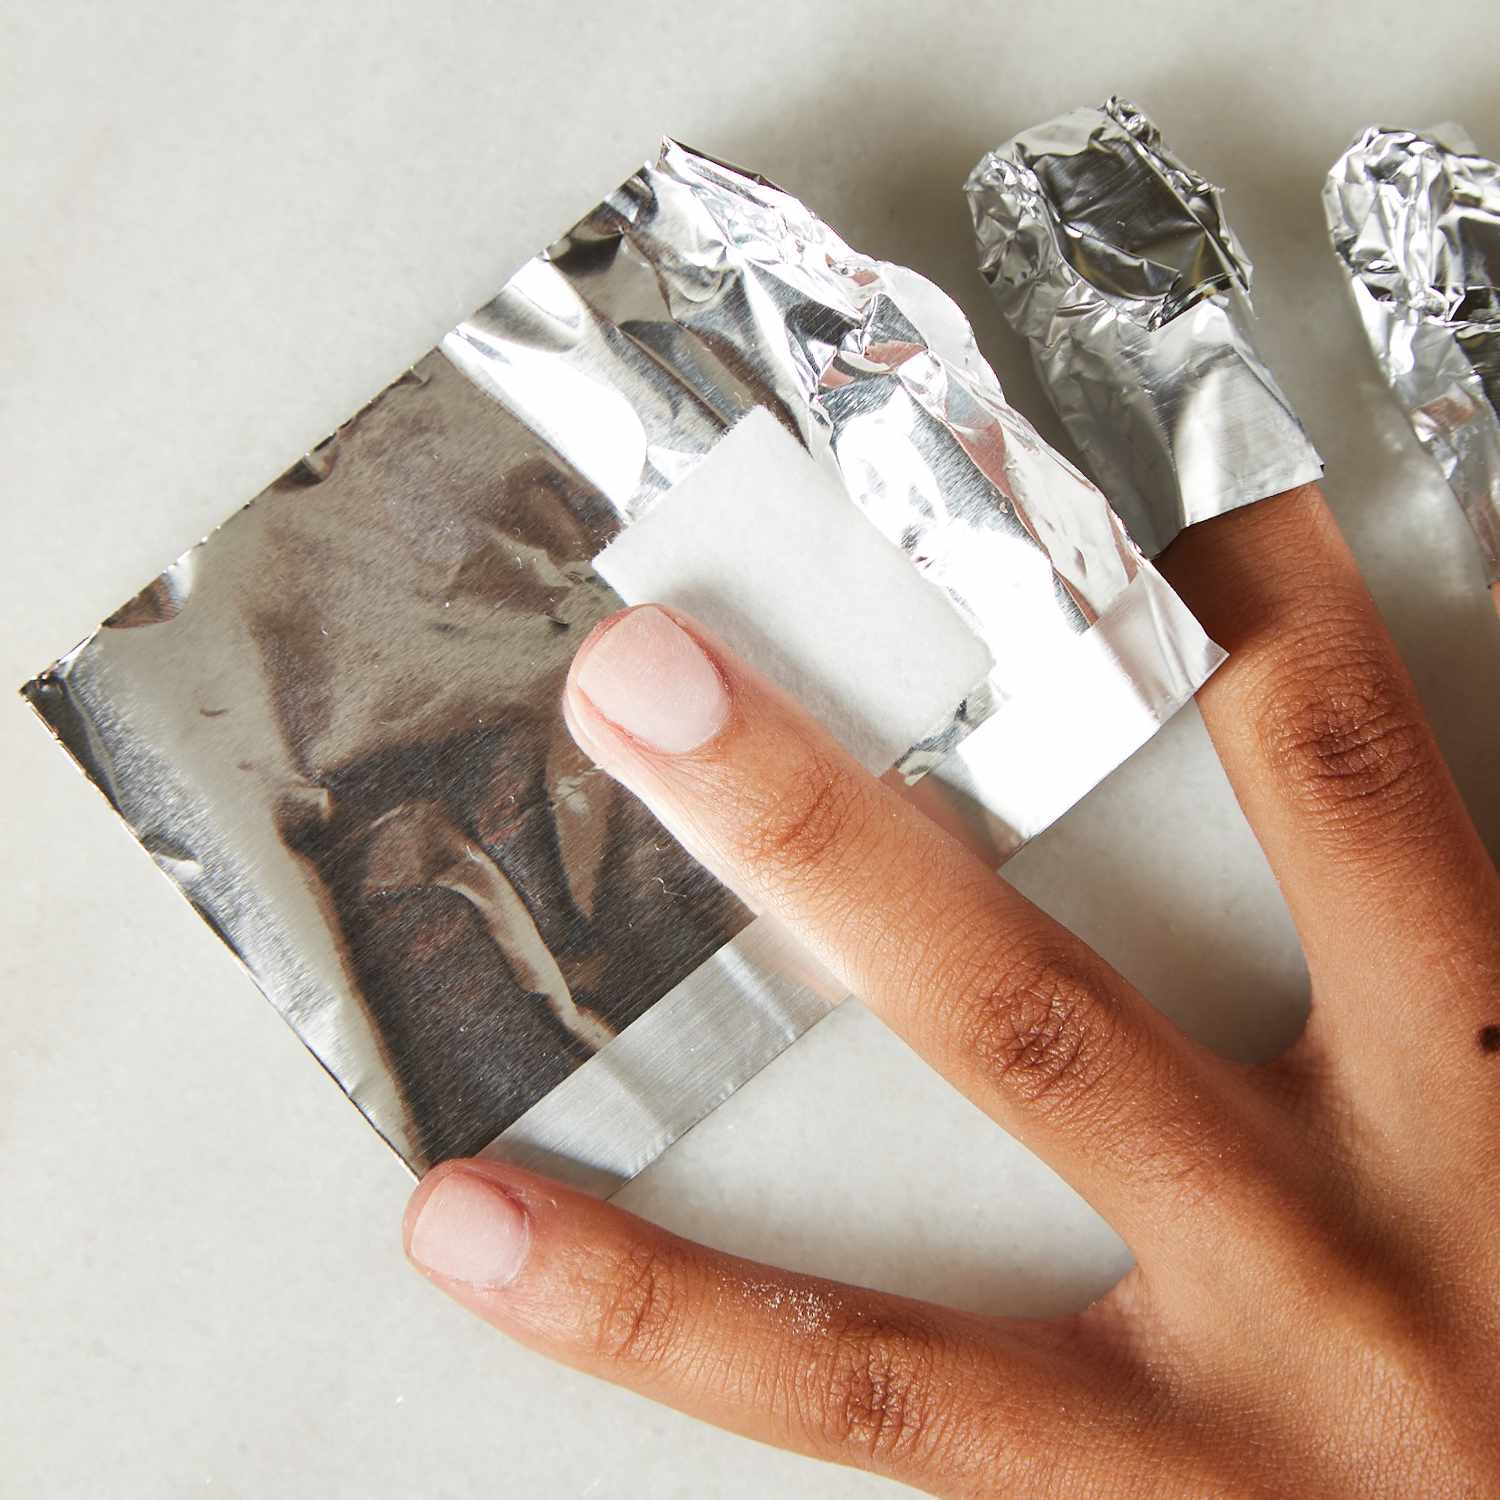 Uma mulher envolve o dedo em papel alumínio usando um pedaço de algodão embebido em acetona.